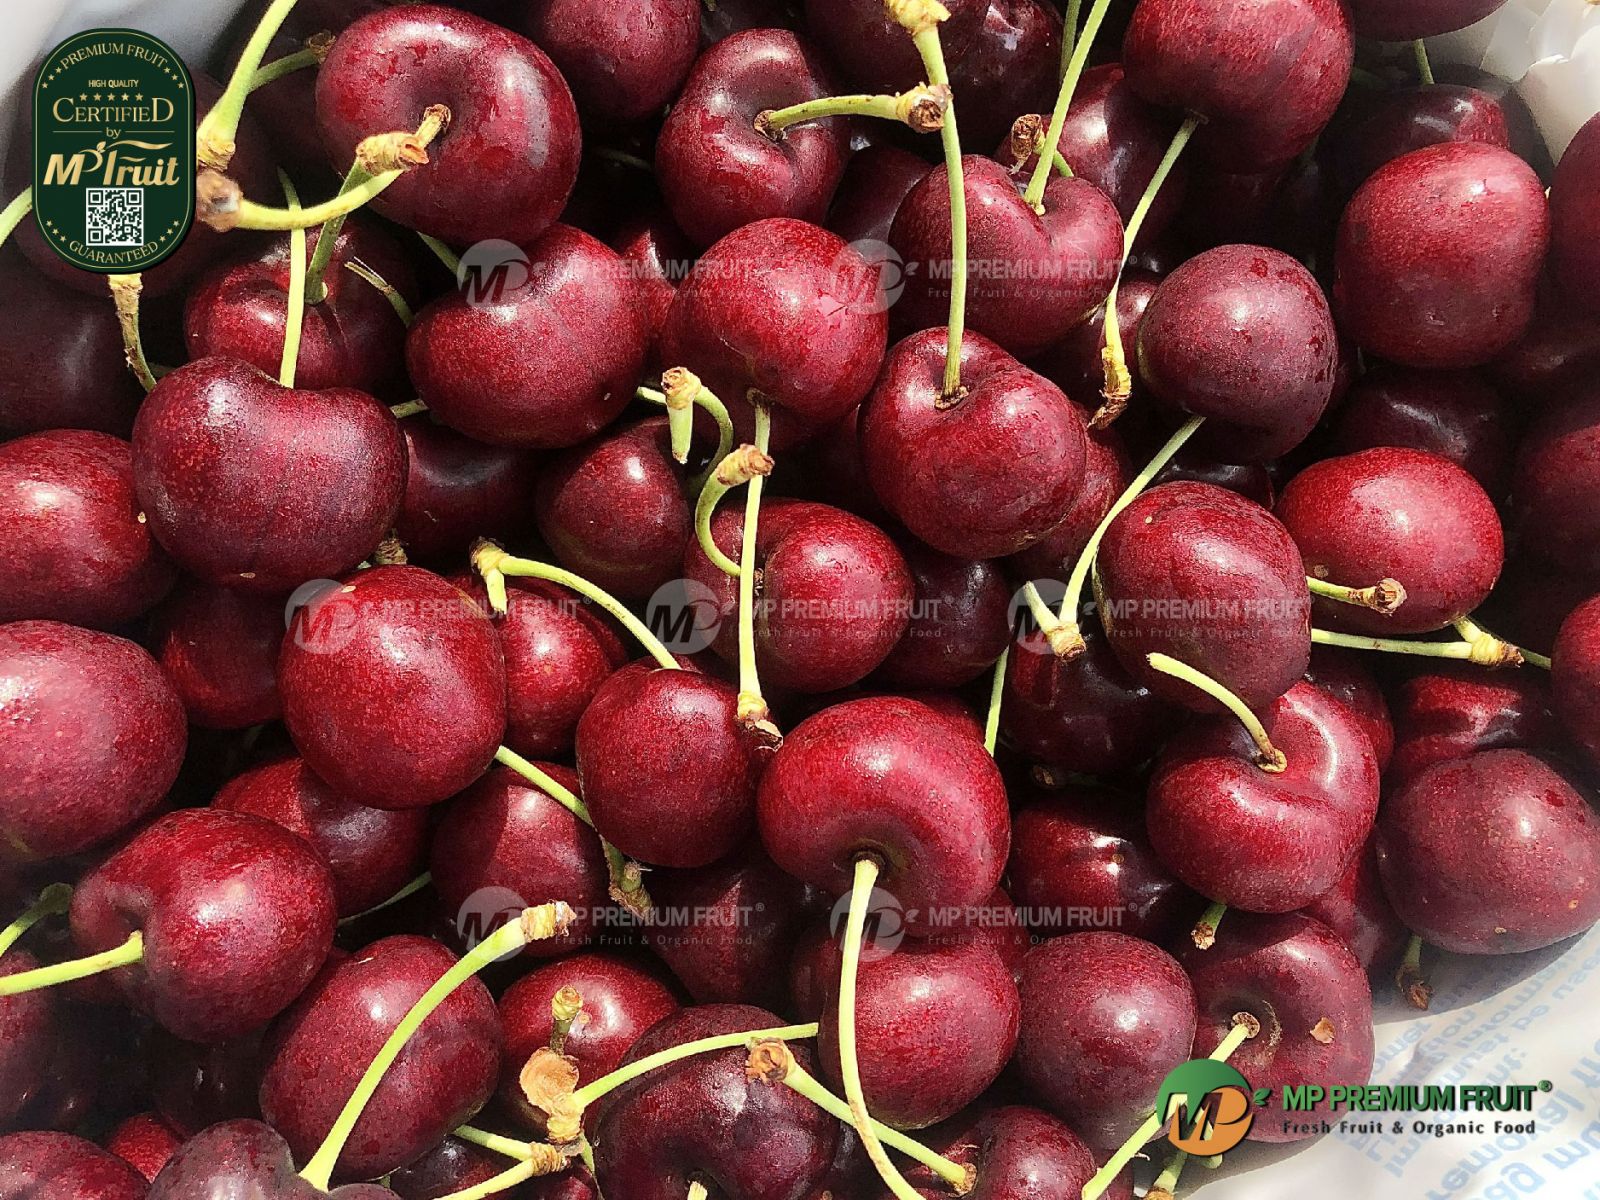 Cherry Đỏ Mỹ Size 8.5 tại MP Fruits